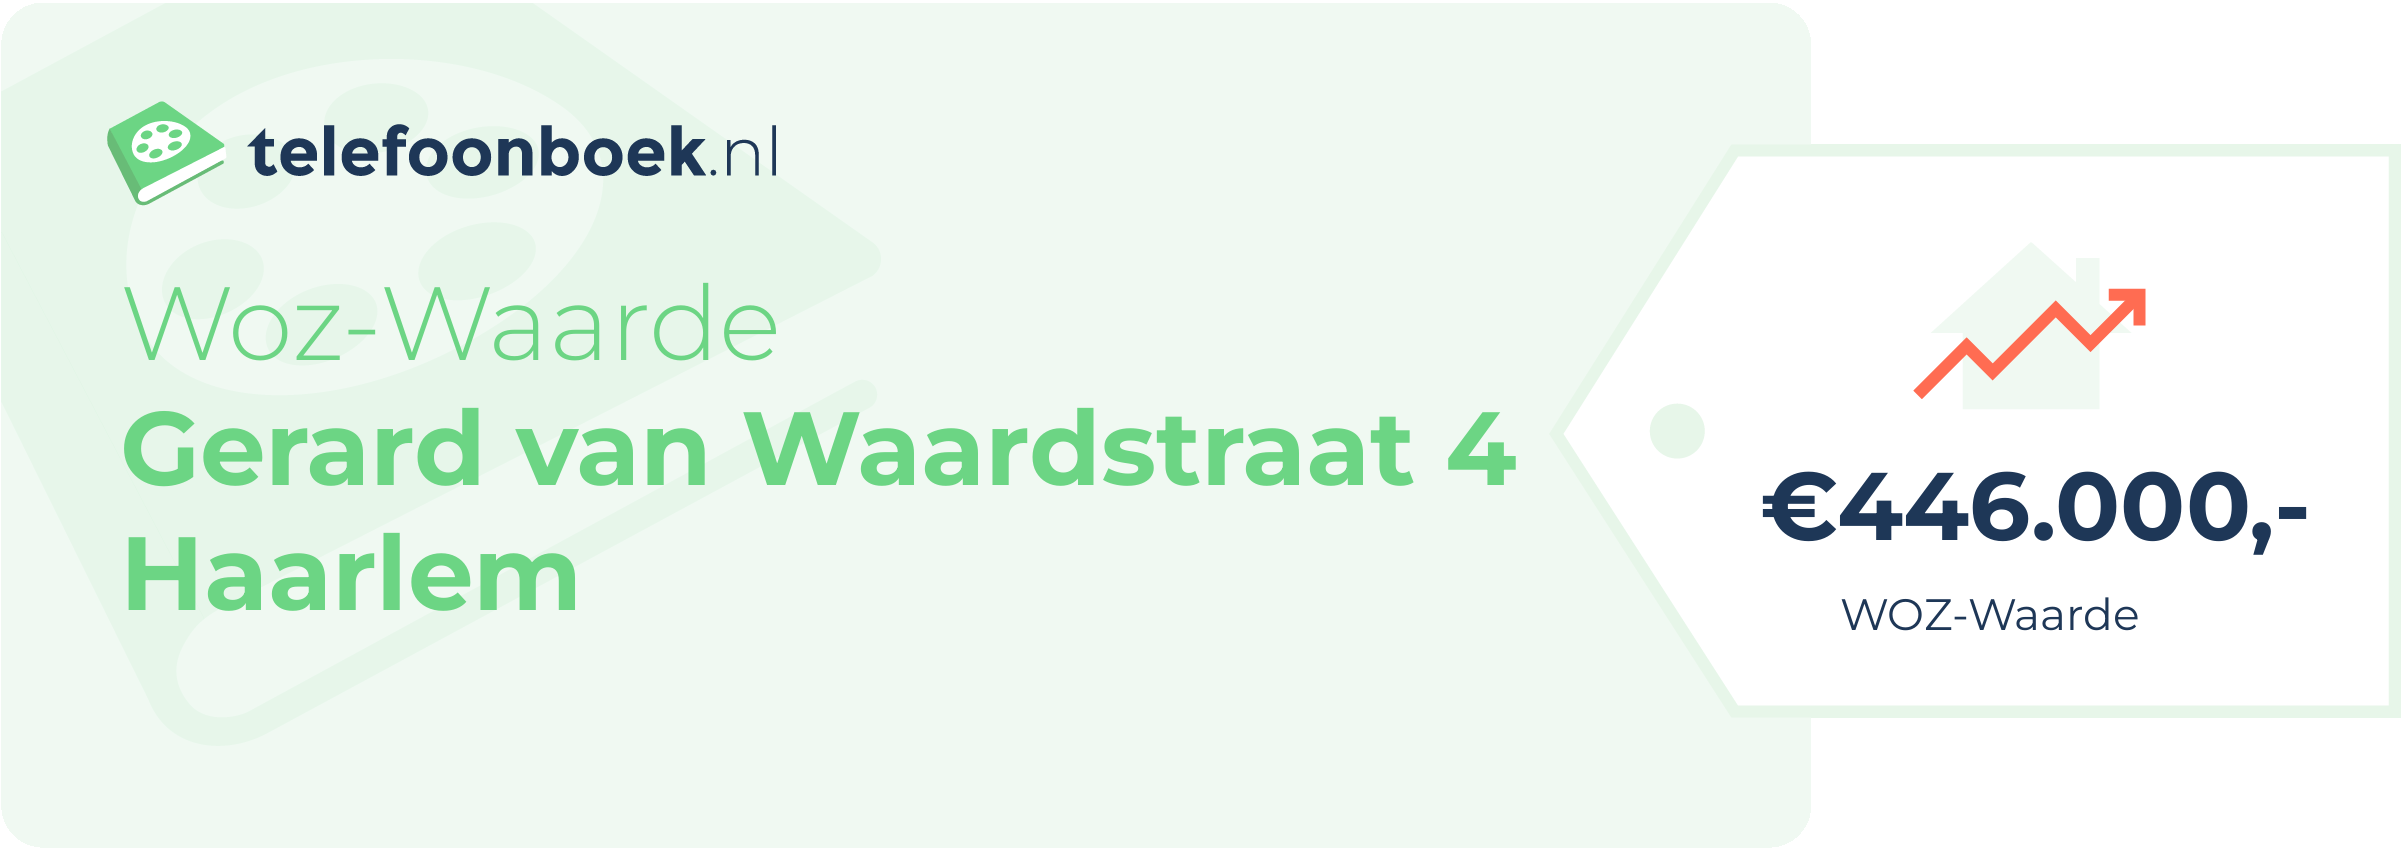 WOZ-waarde Gerard Van Waardstraat 4 Haarlem